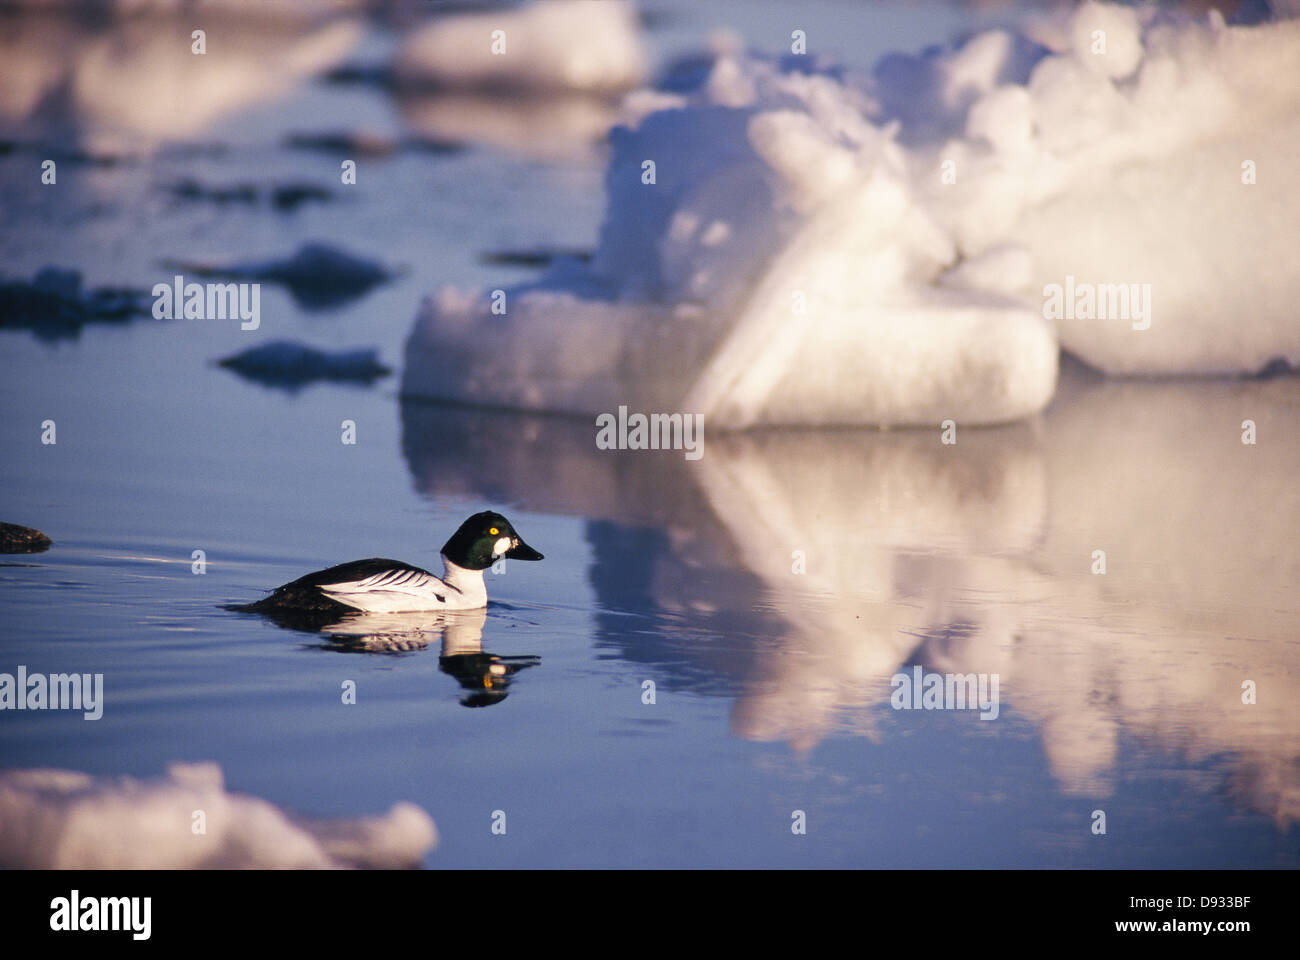 Bird galleggiante nel lago dalla formazione di ghiaccio, vista laterale Foto Stock